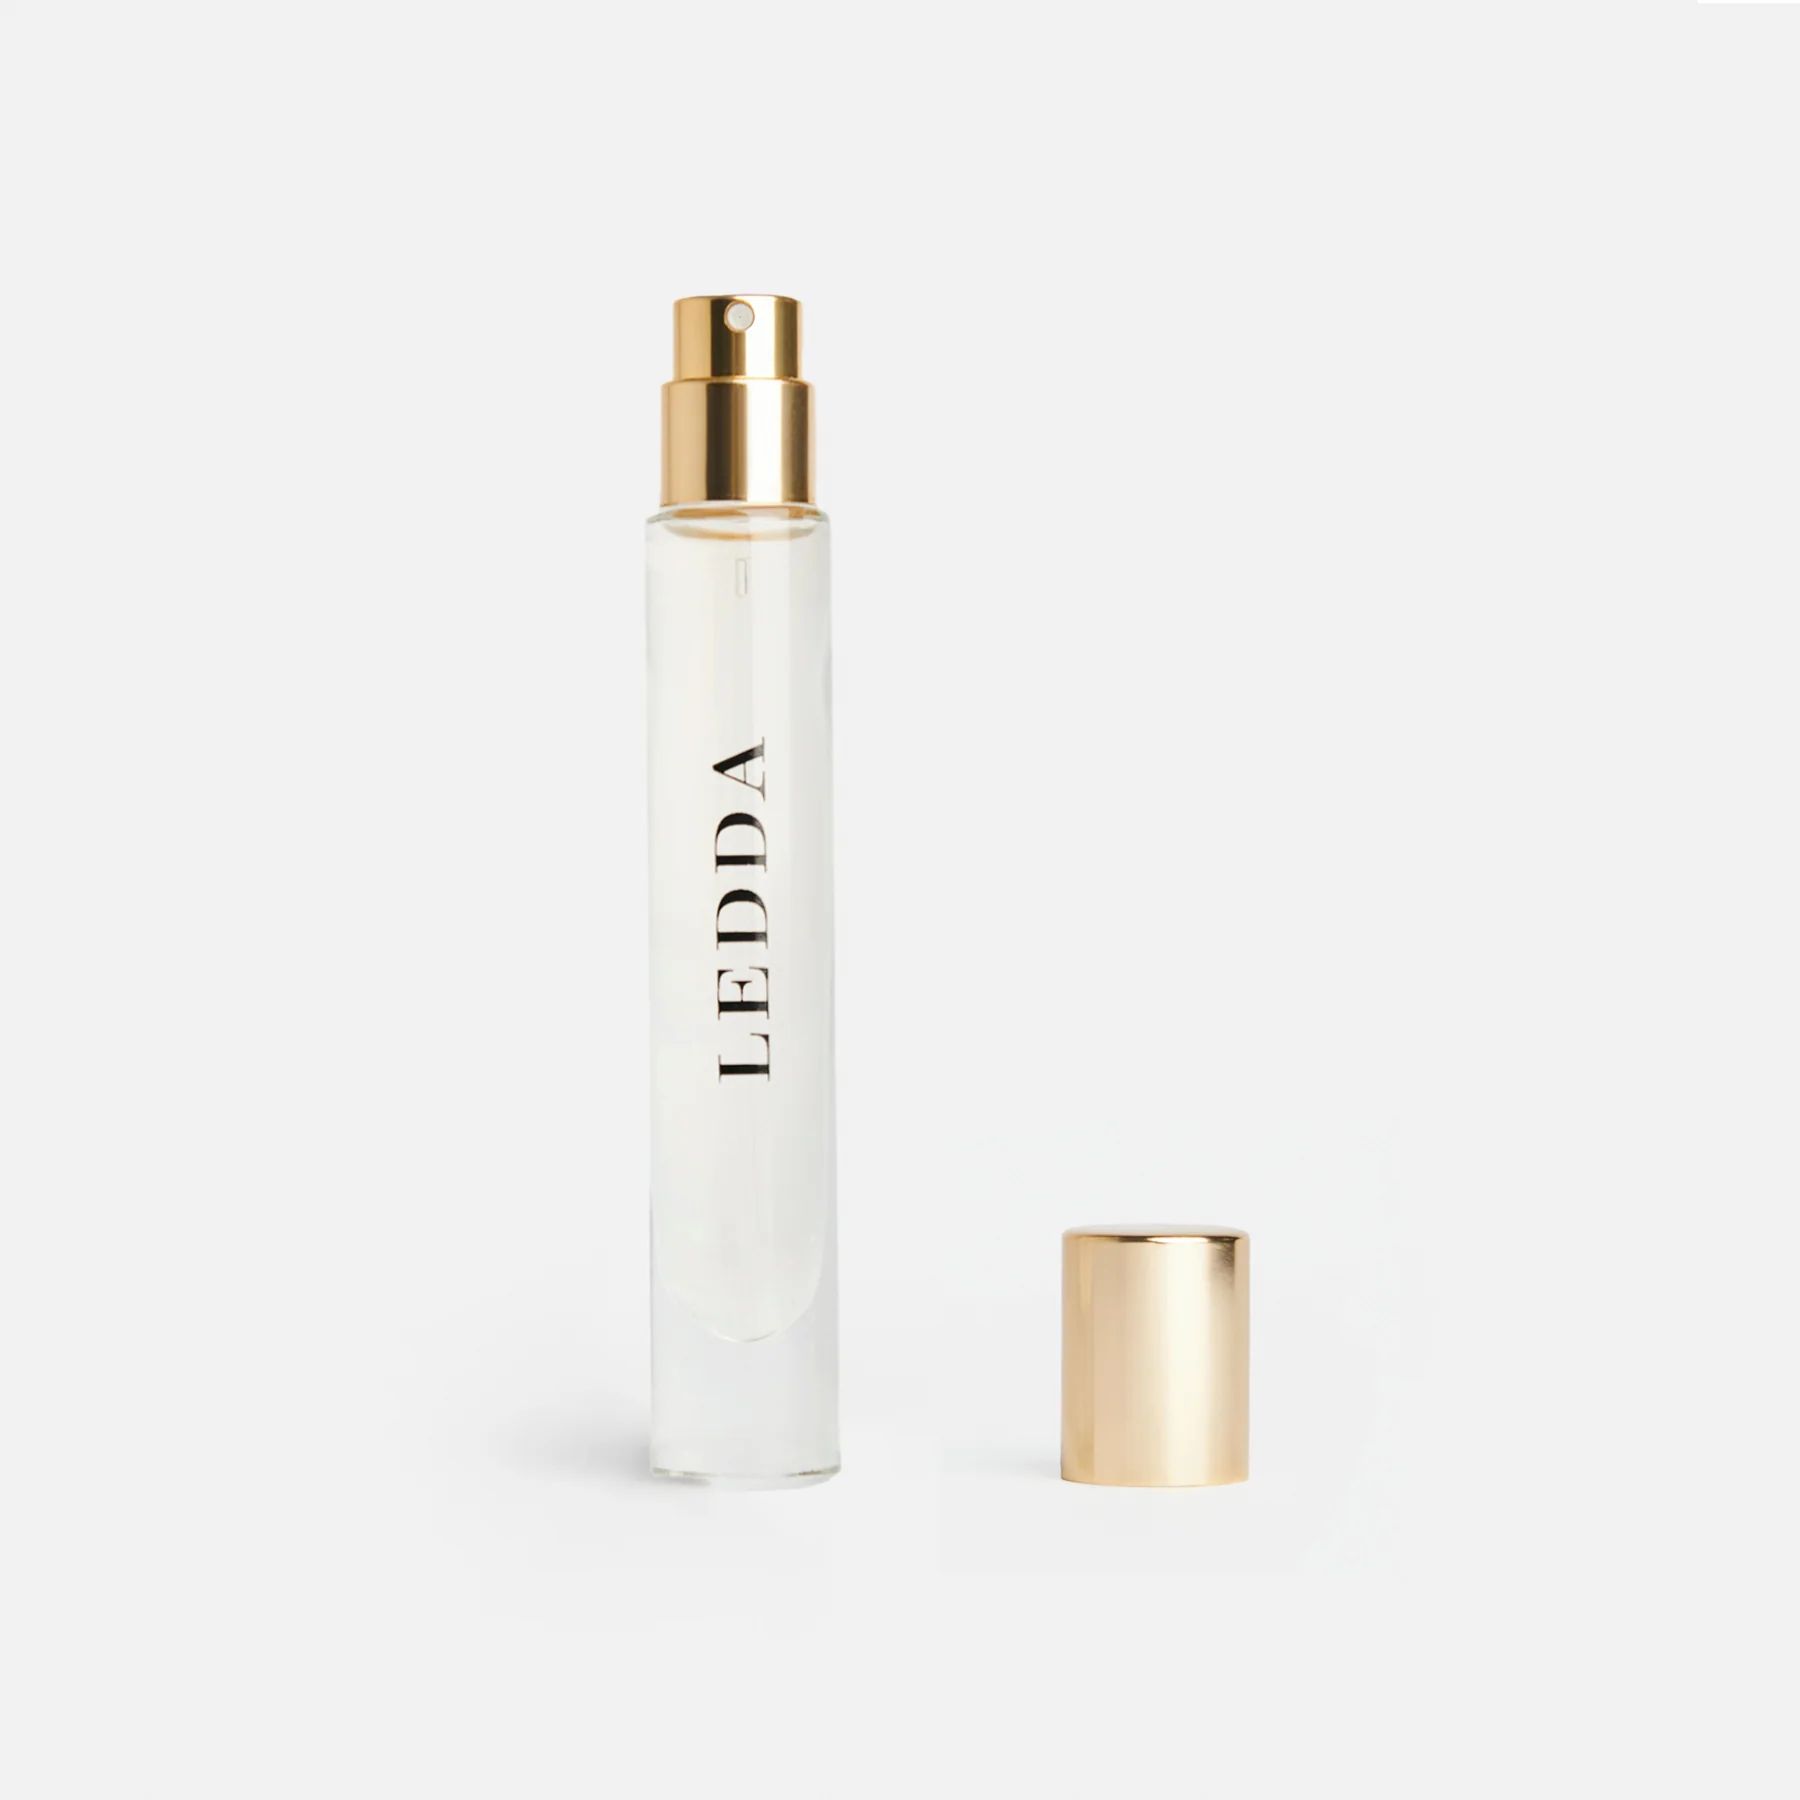 22 Orris Eau De Parfum Travel Size - 8 ml | LEDDA (US)